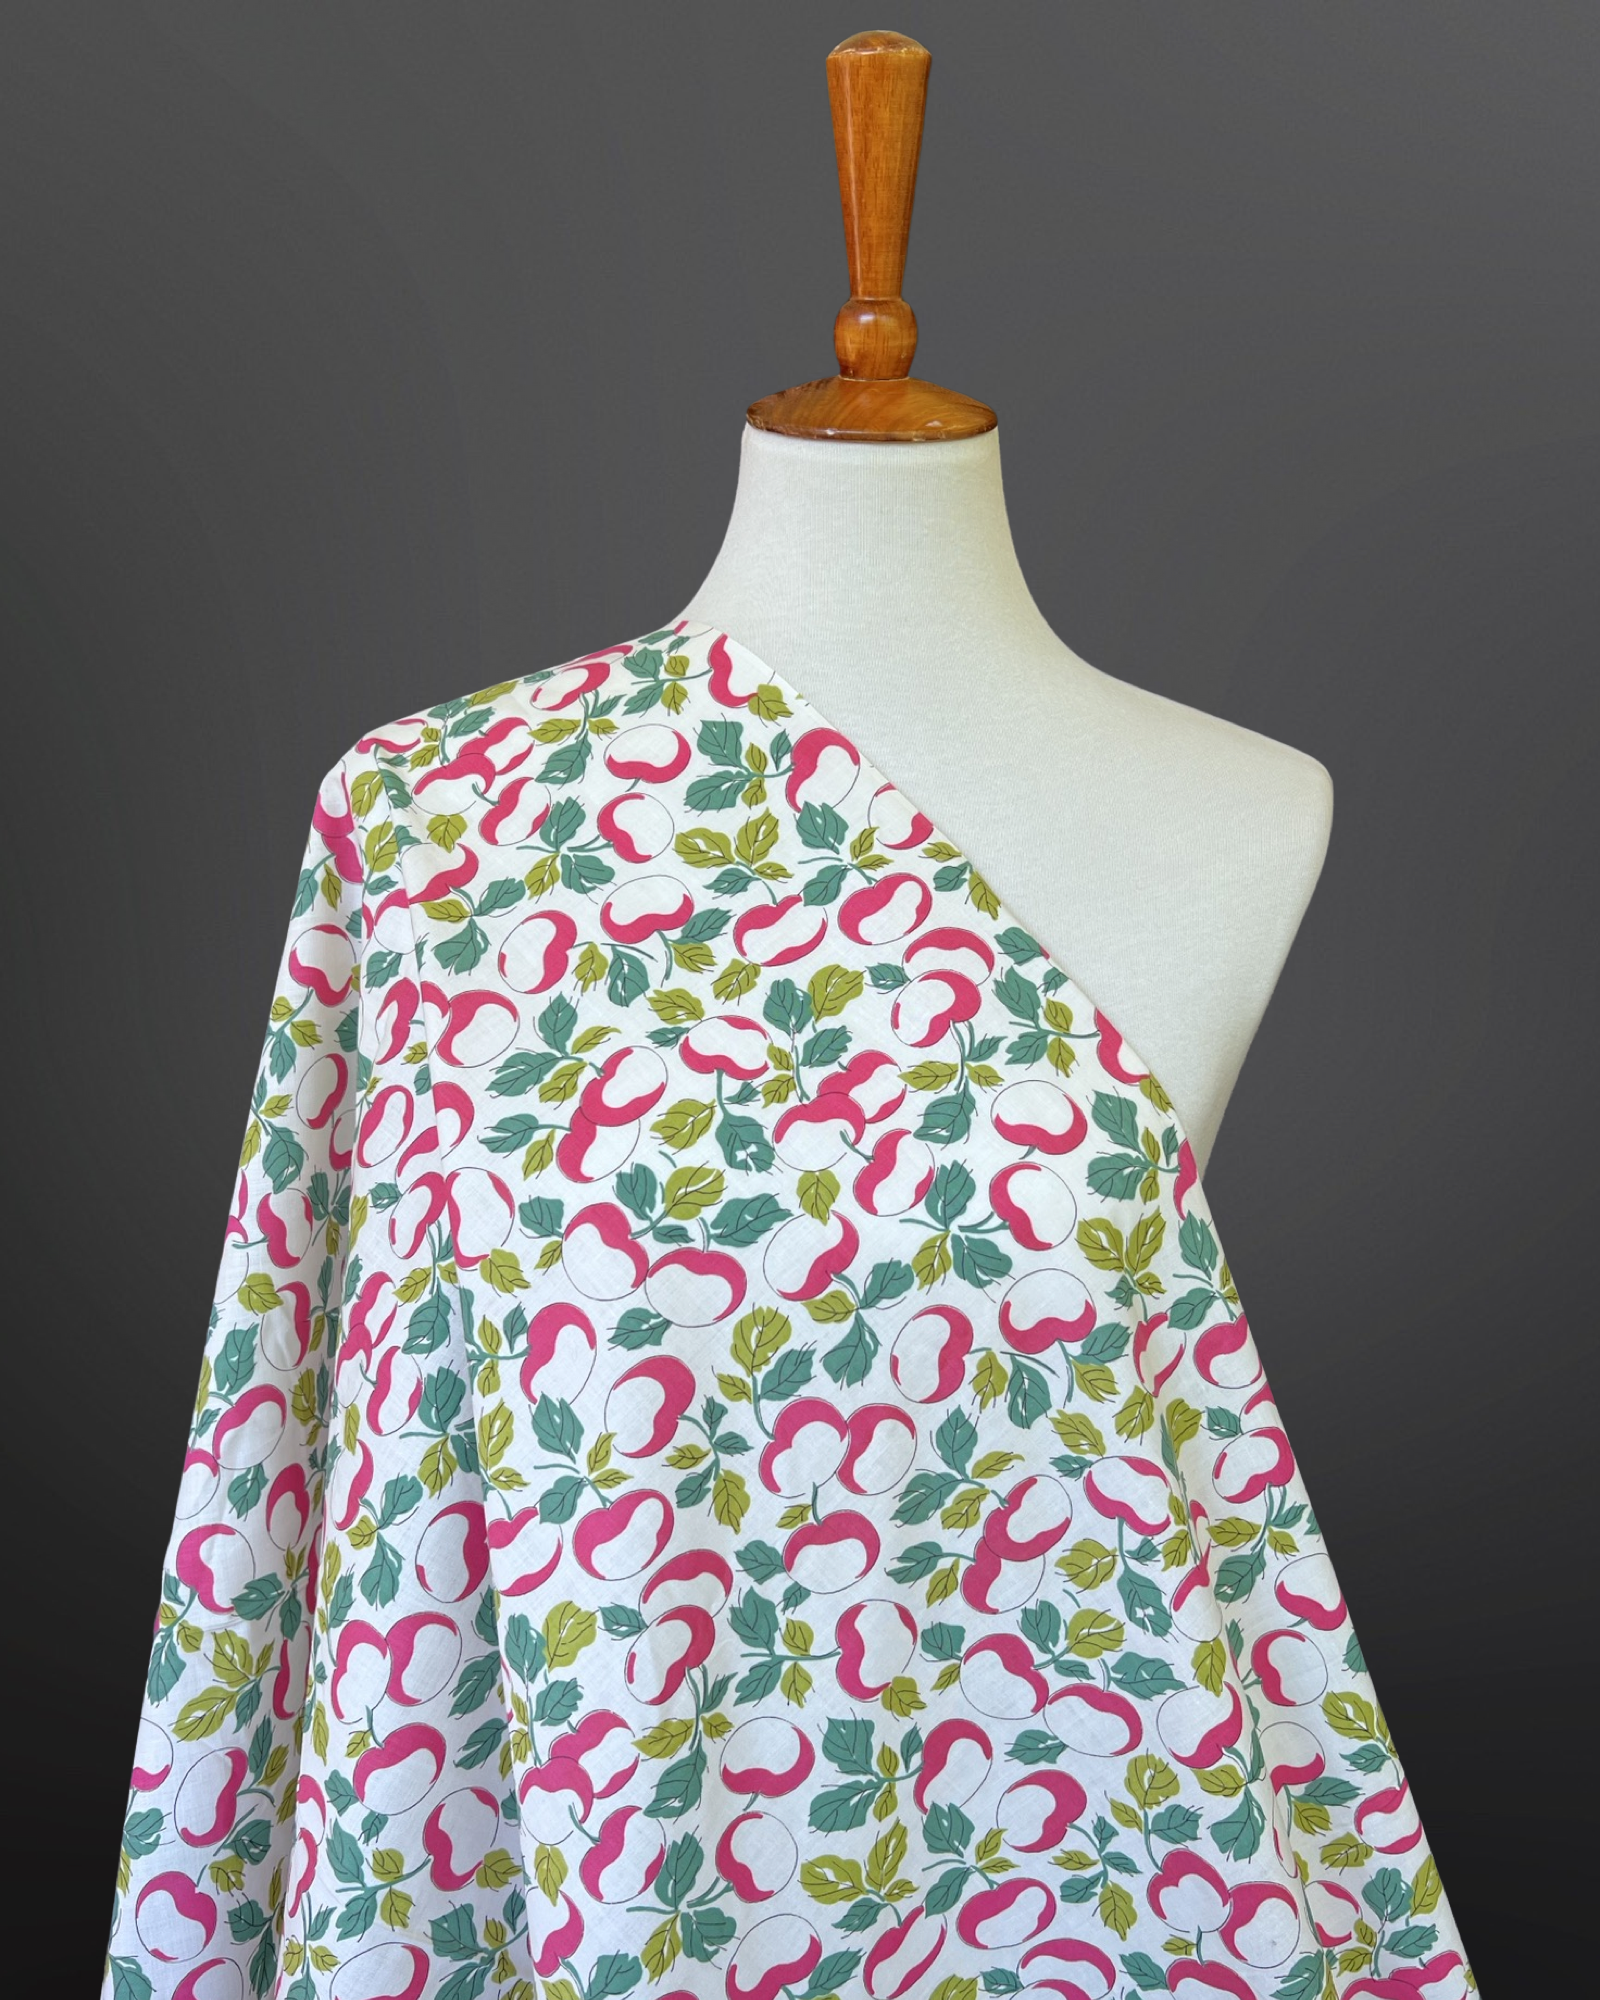 1940s-1950s Apple/Cherries Print Cotton